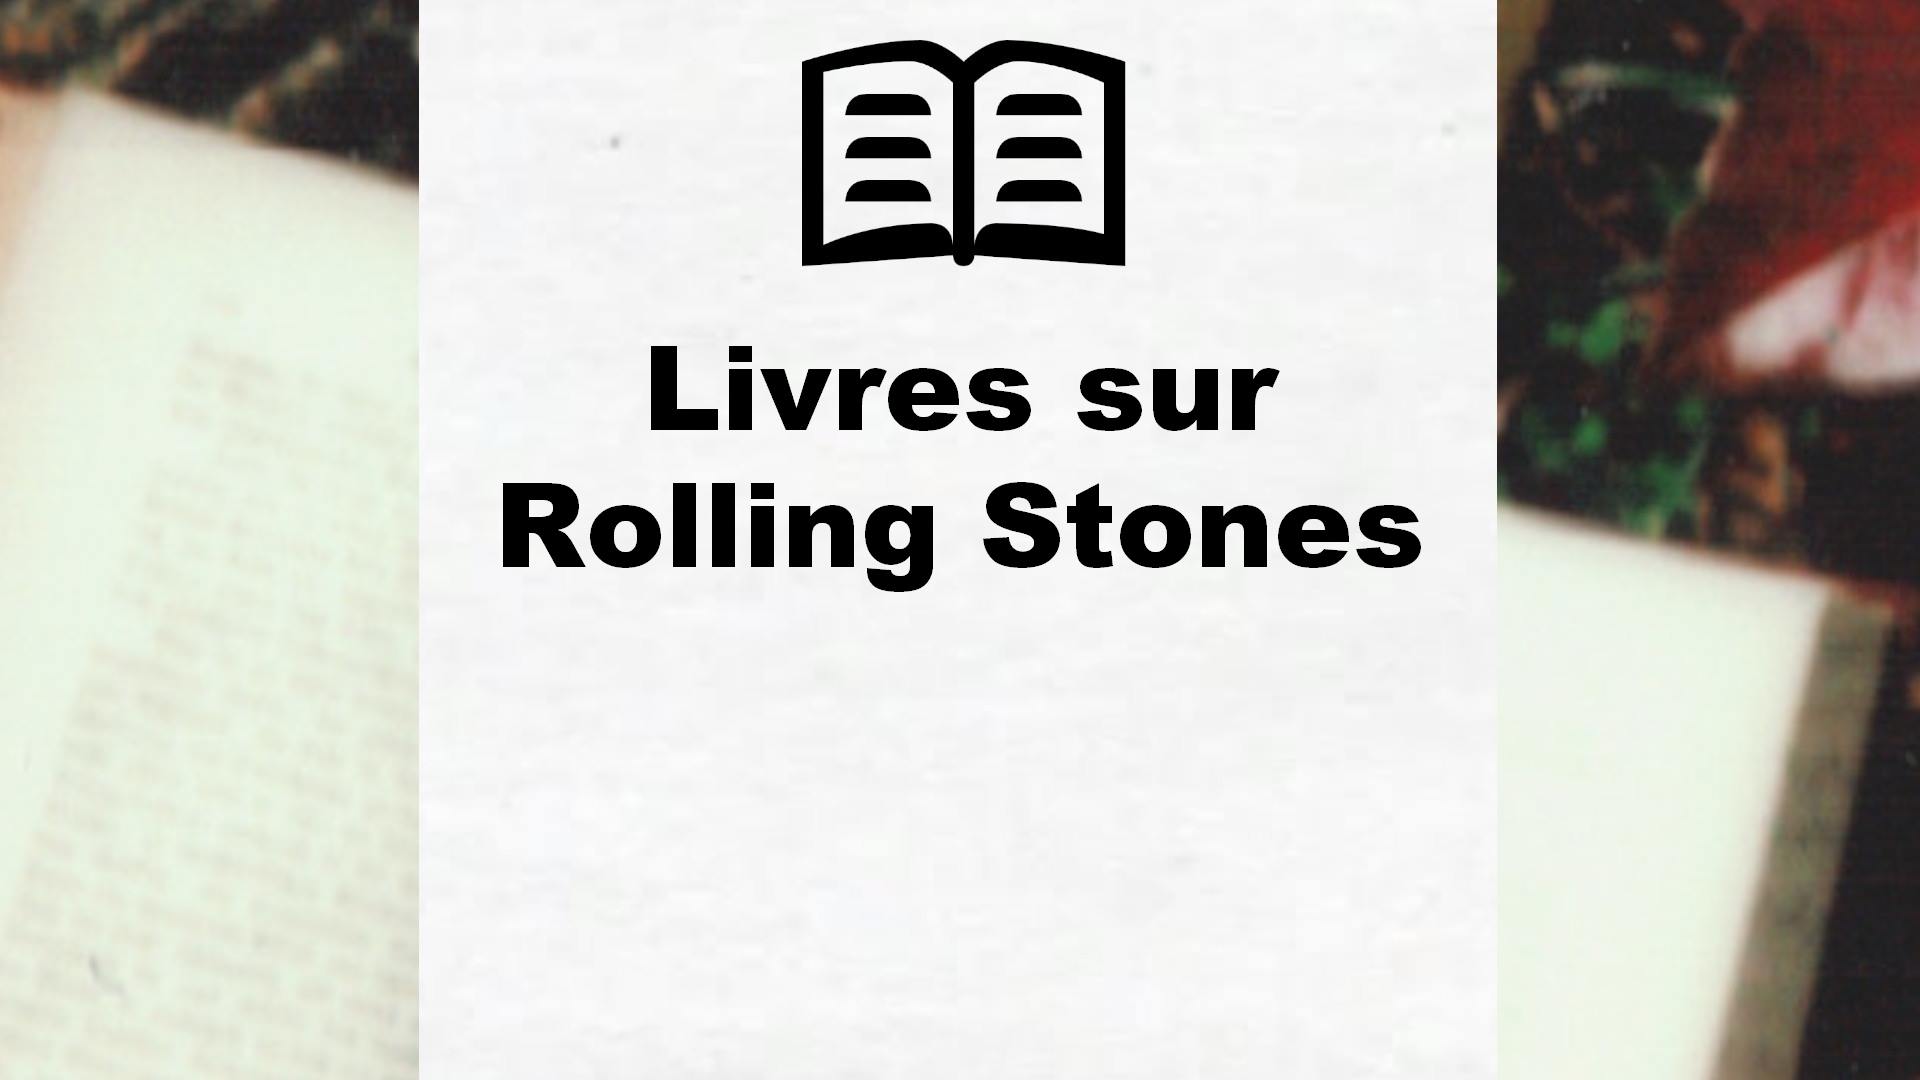 Livres sur Rolling Stones